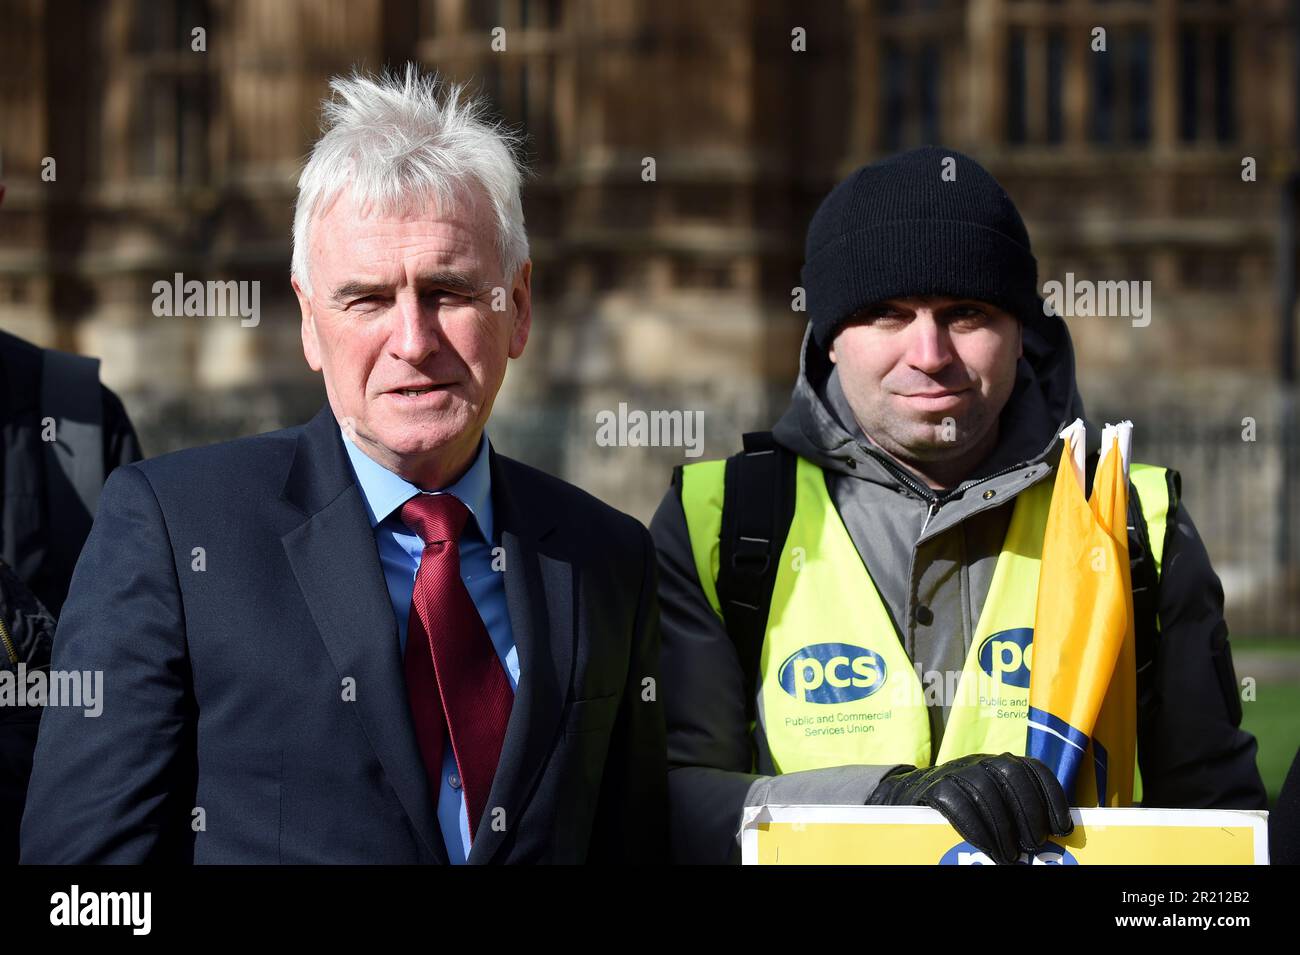 Fotografia del politico laburista e cancelliere ombra dello scacchiere John McDonnell, presta il suo sostegno mentre si unisce ai manifestanti Interserve dell'Unione dei servizi pubblici e commerciali al di fuori del parlamento britannico. Foto Stock